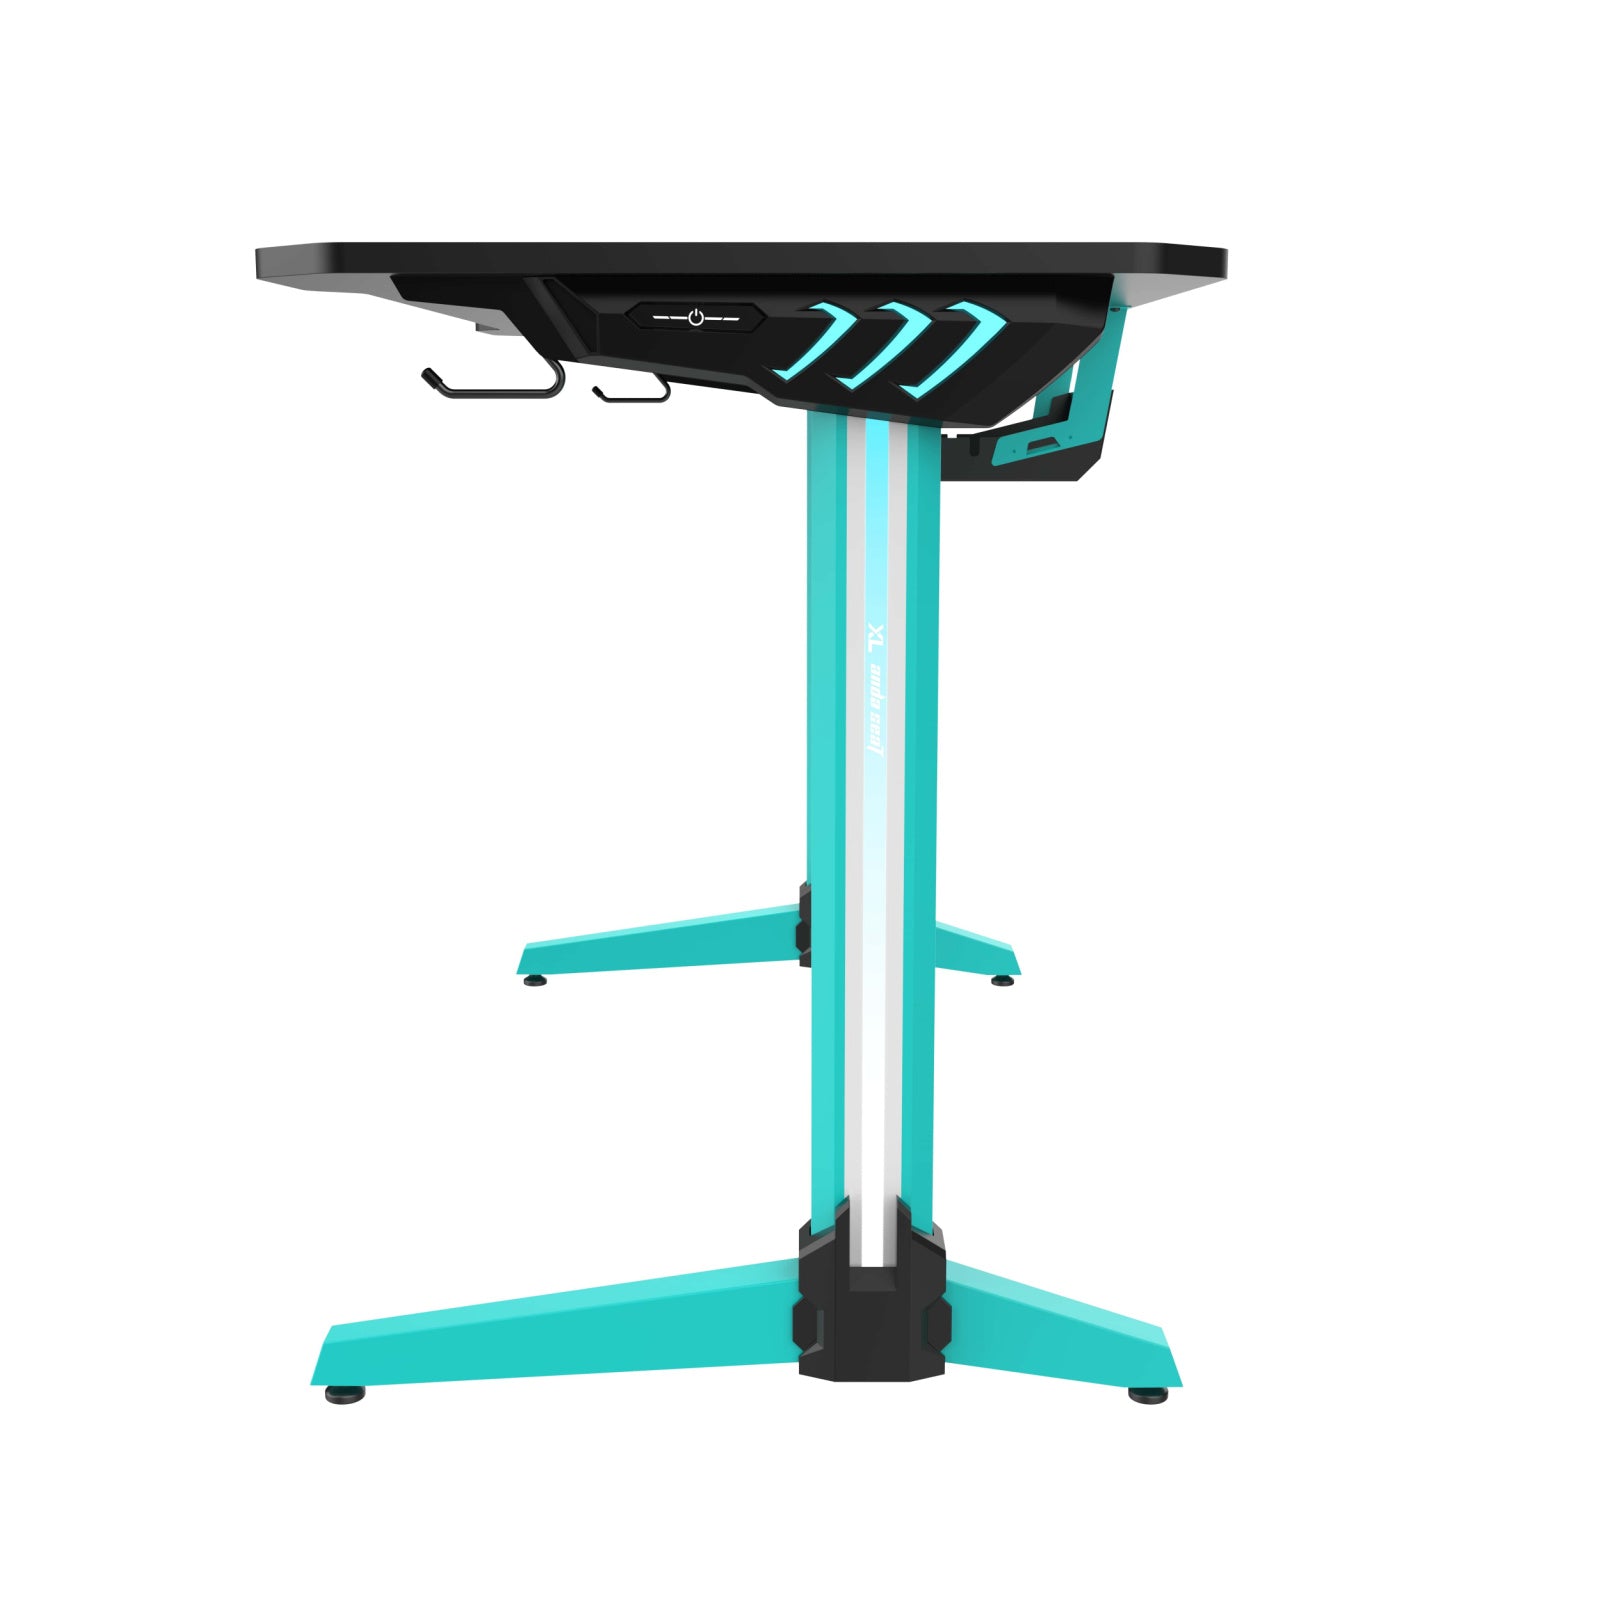 Anda Seat Excel Edition Desk Gaming Desk